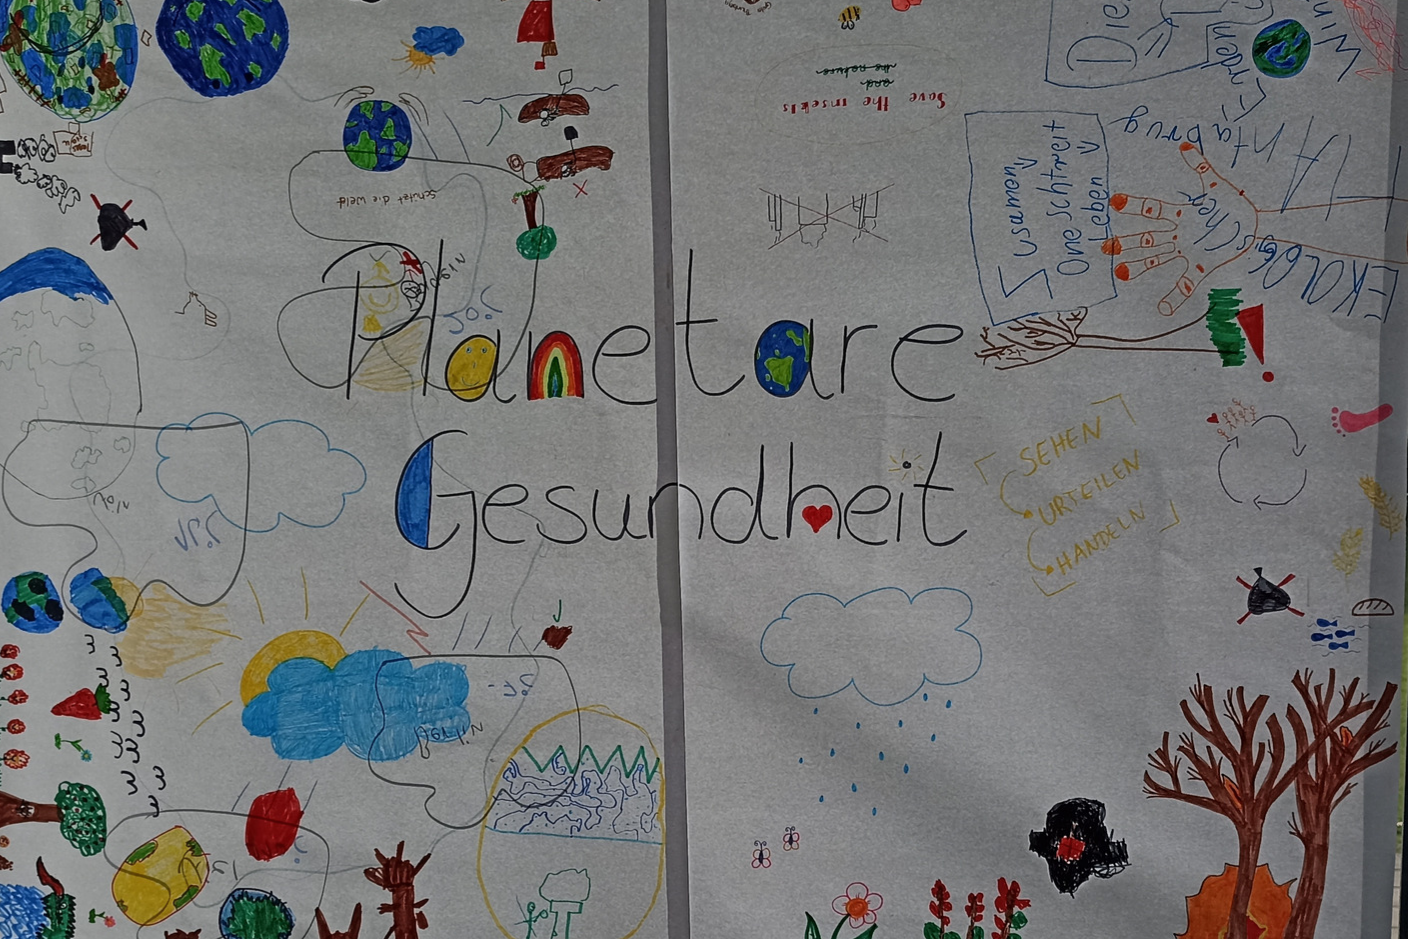 Planetare Gesundheit: von Kindern erstellt